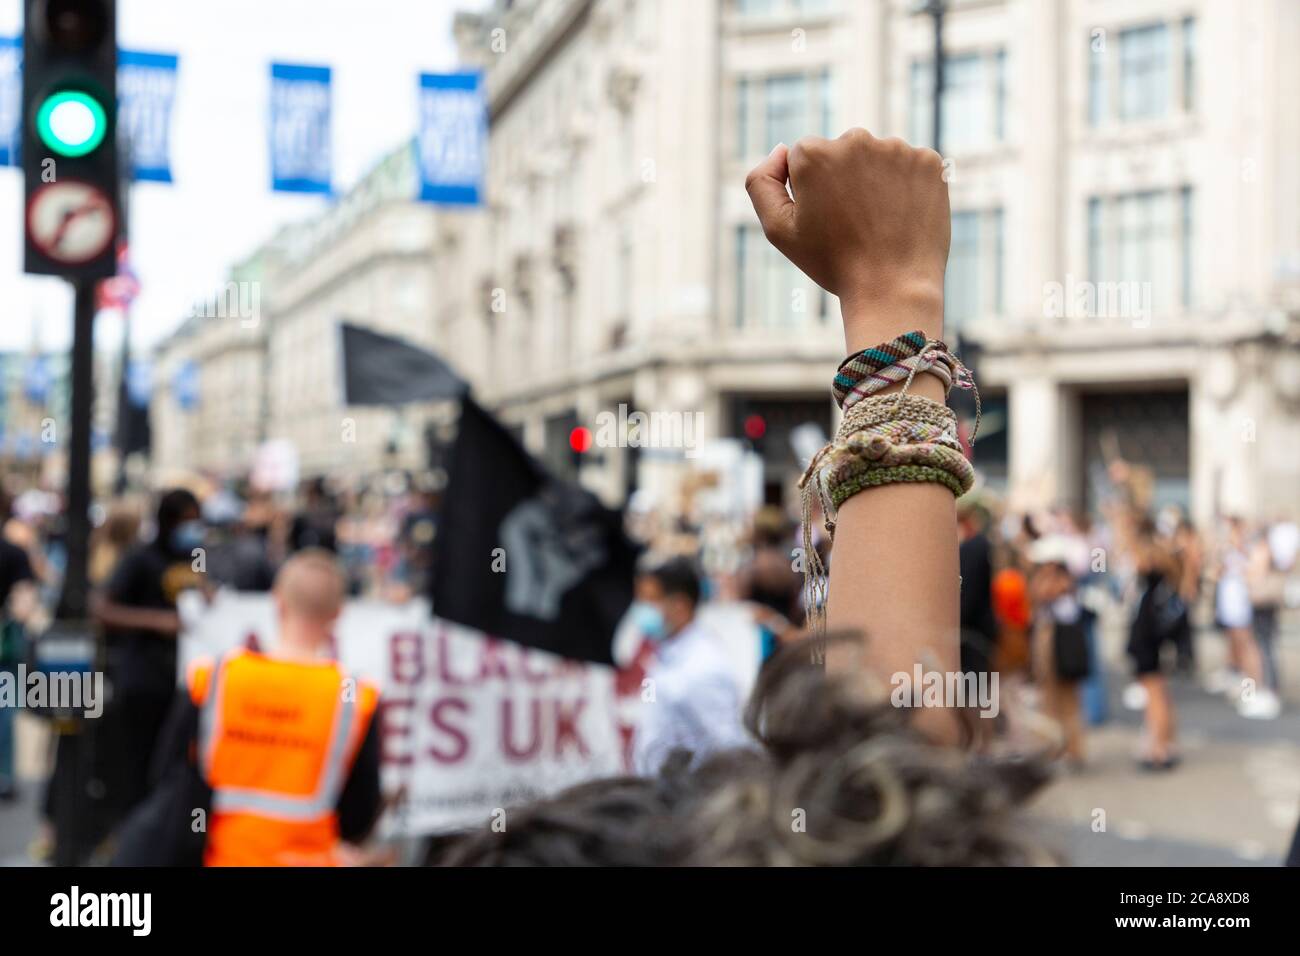 Primo piano di un manifestante clenched fist durante una dimostrazione Black Lives Matter, Oxford Circus, Londra, 2 agosto 2020 Foto Stock